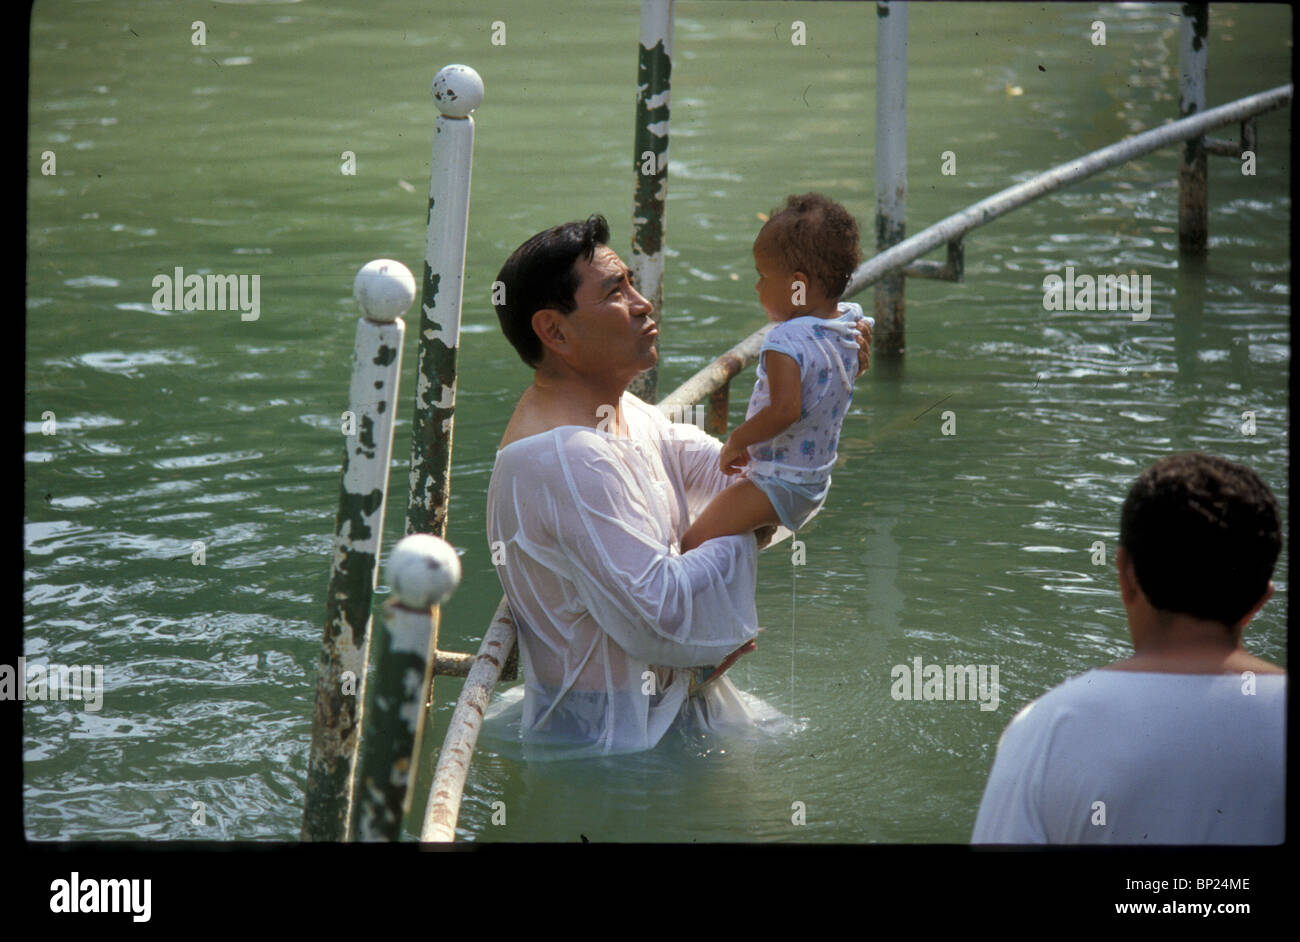 593. BAPTIZING CEREMONY IN THE RIVER JORDAN Stock Photo